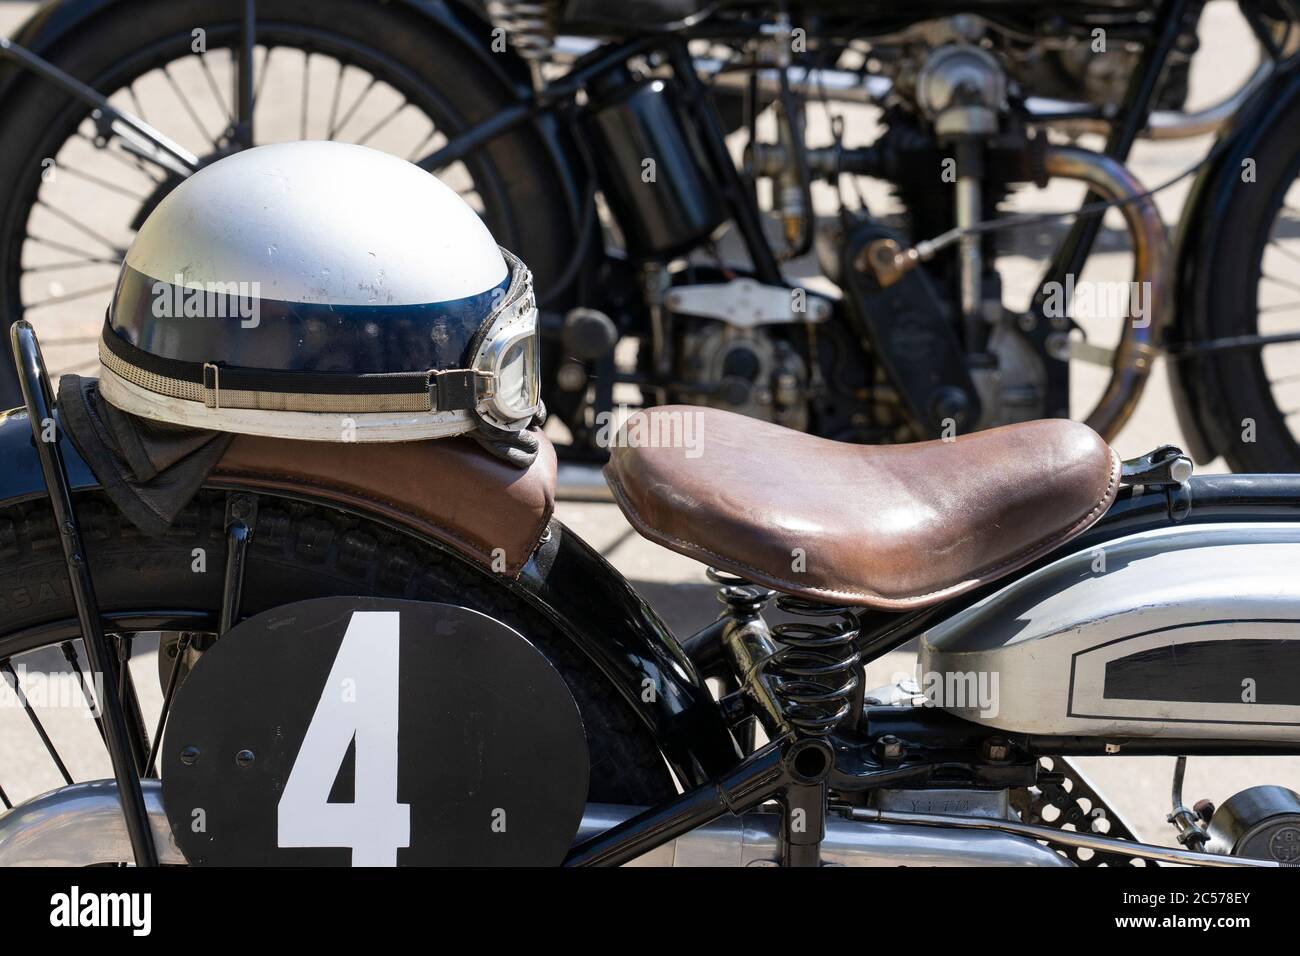 Vecchie Moto classiche alla mostra motociclistica Foto Stock